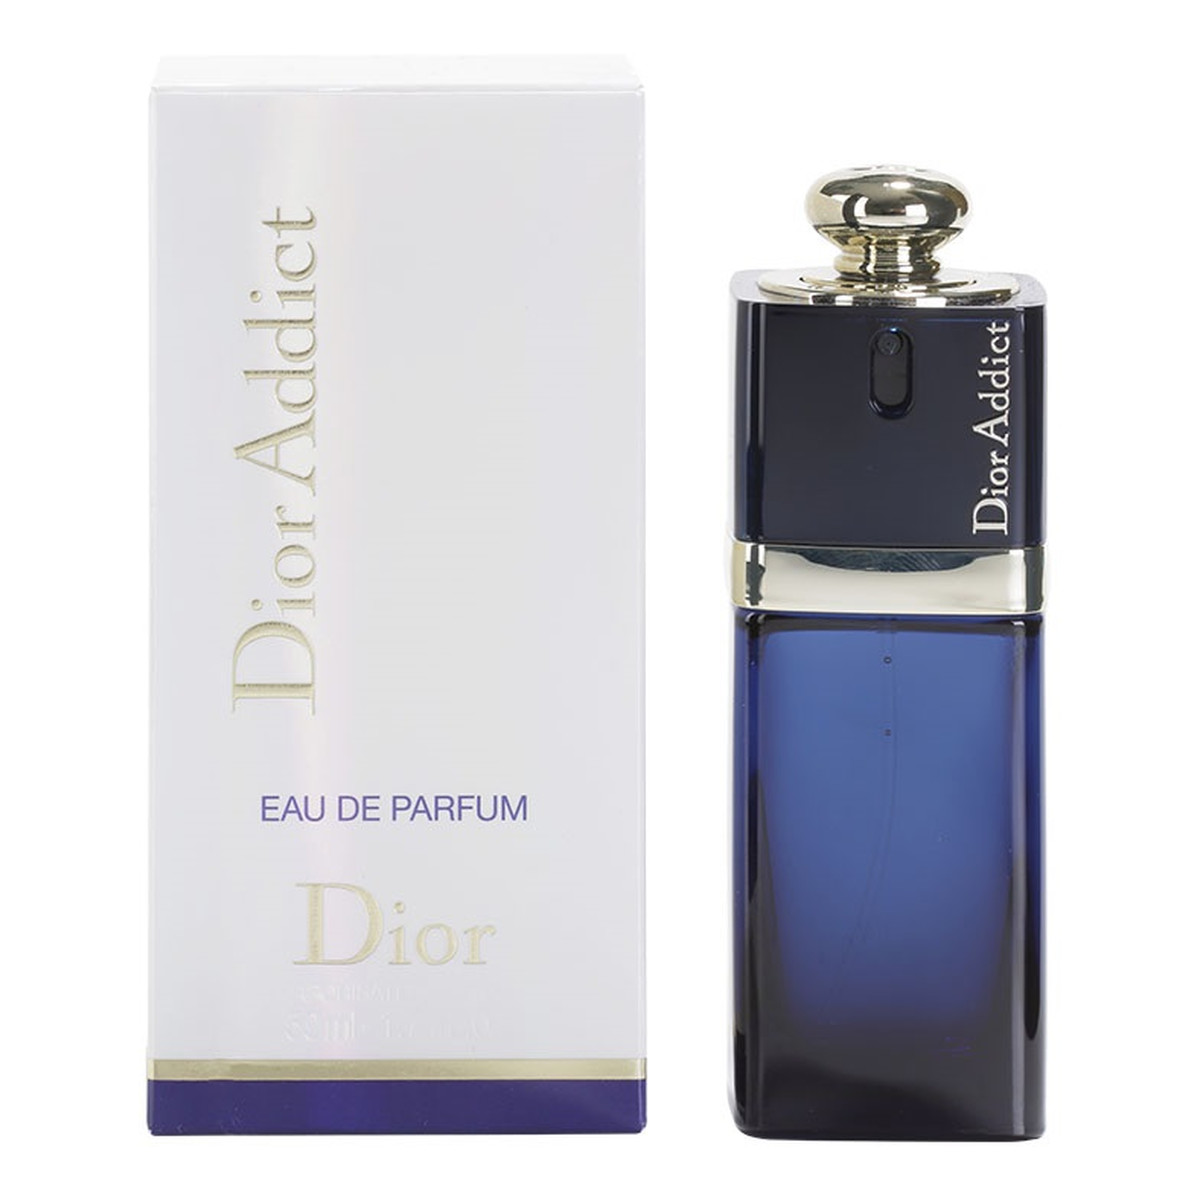 Dior Addict woda perfumowana dla kobiet 50ml